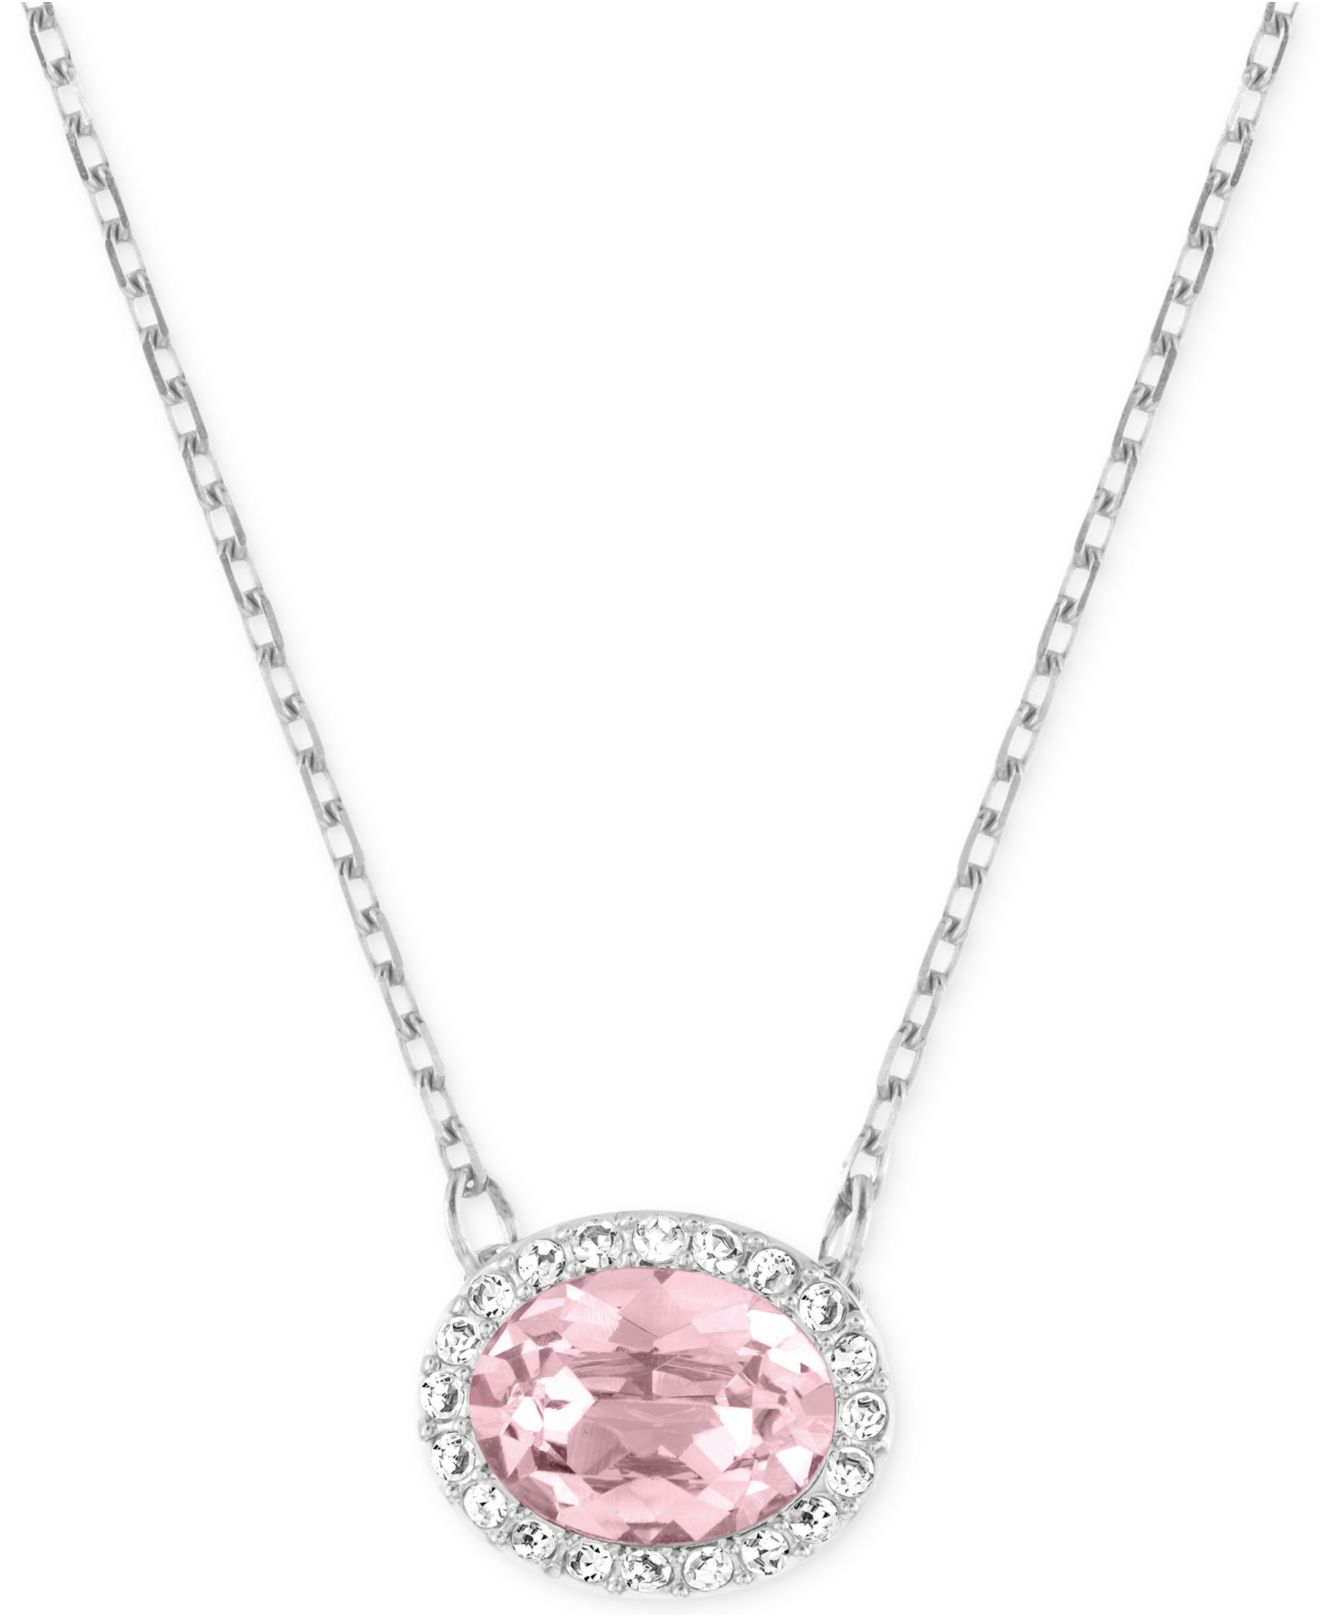 Wedding Jewelry - Pink Heart Swarovski Crystal Necklace | ADORA by Simona